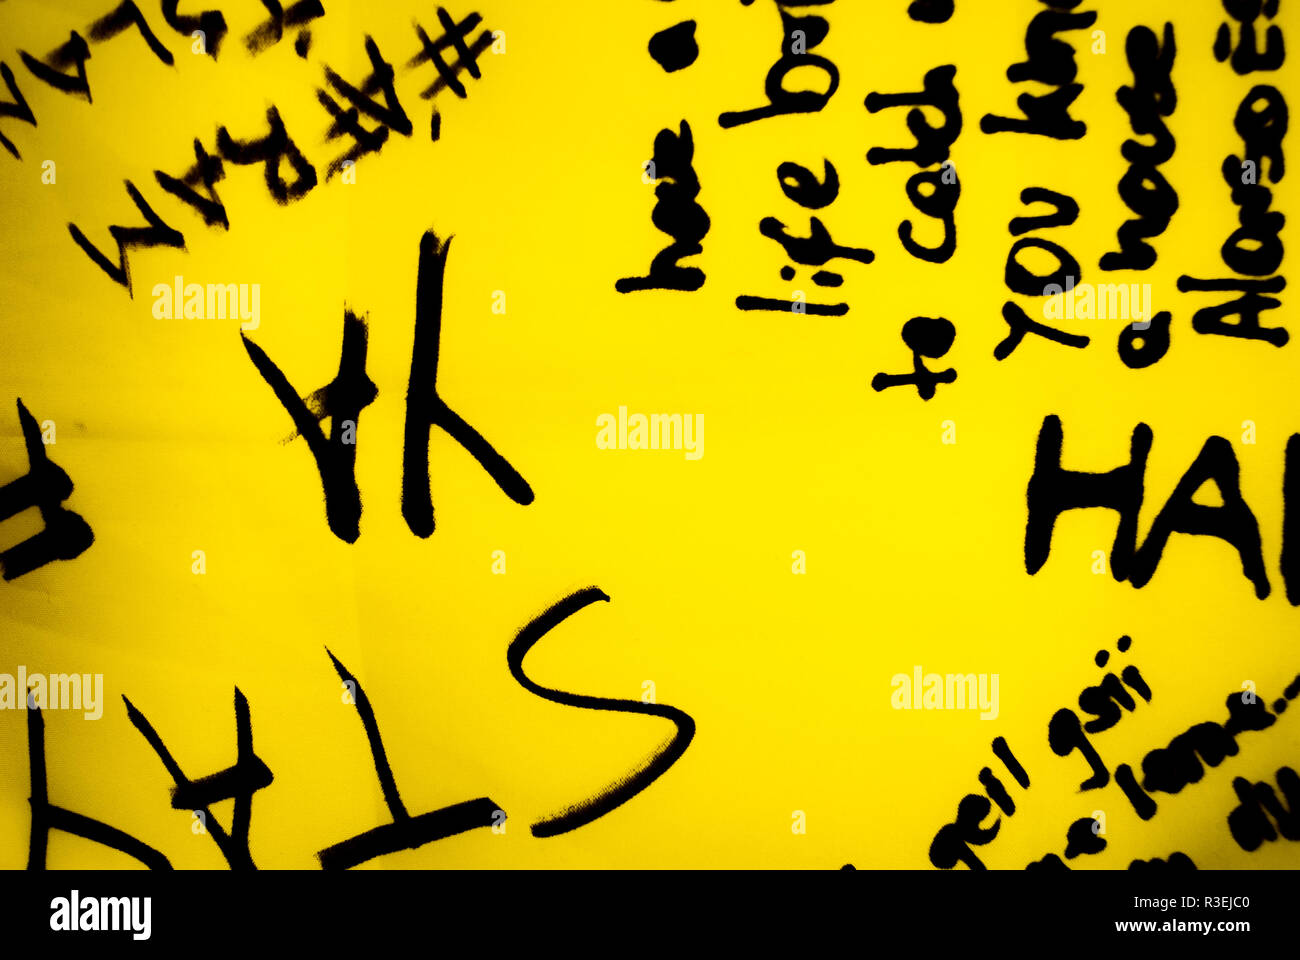 Un fond conceptuel noir et jaune avec du texte Banque D'Images